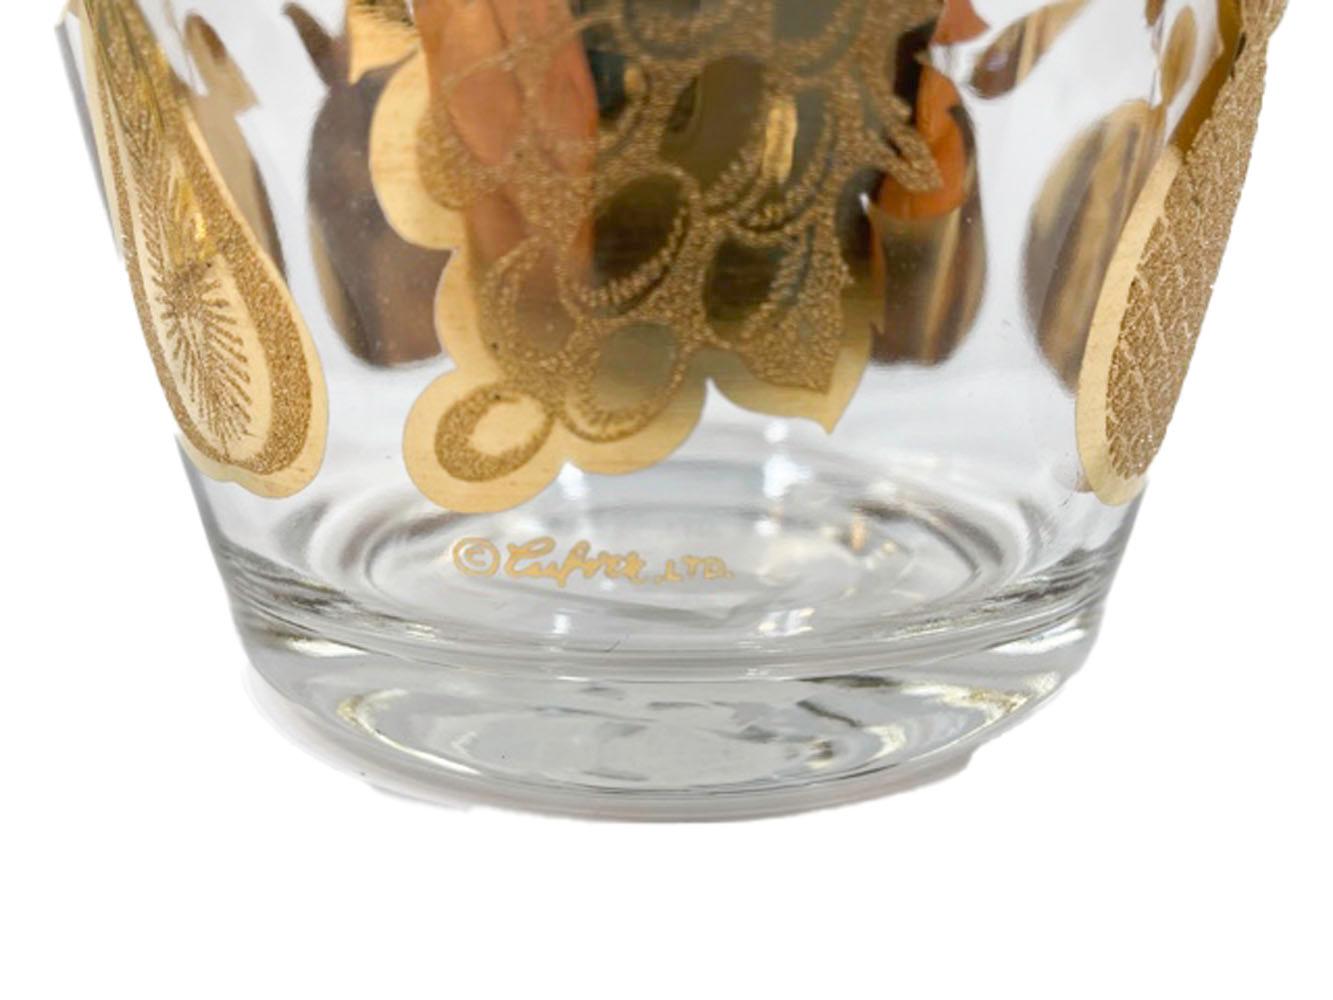 Bol à glace moderne du milieu du siècle avec couvercle dans un caddy en métal par Culver dans le motif Florentine, décoré en or 22k lisse et texturé représentant une pomme, une poire, un ananas et des raisins. Le bol en verre et le couvercle en